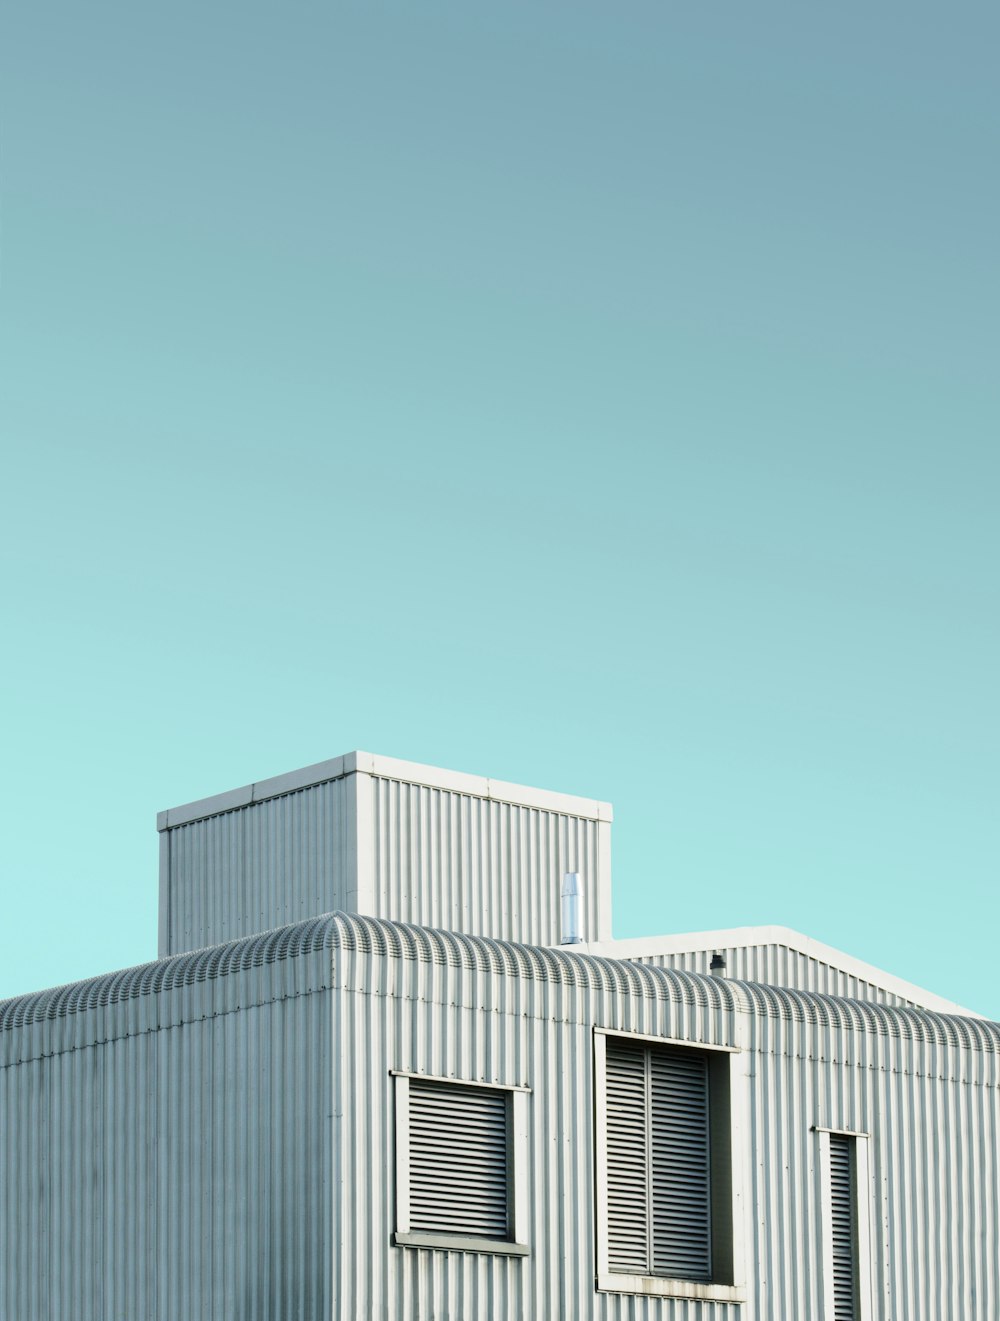 灰色の建物のローアングル写真